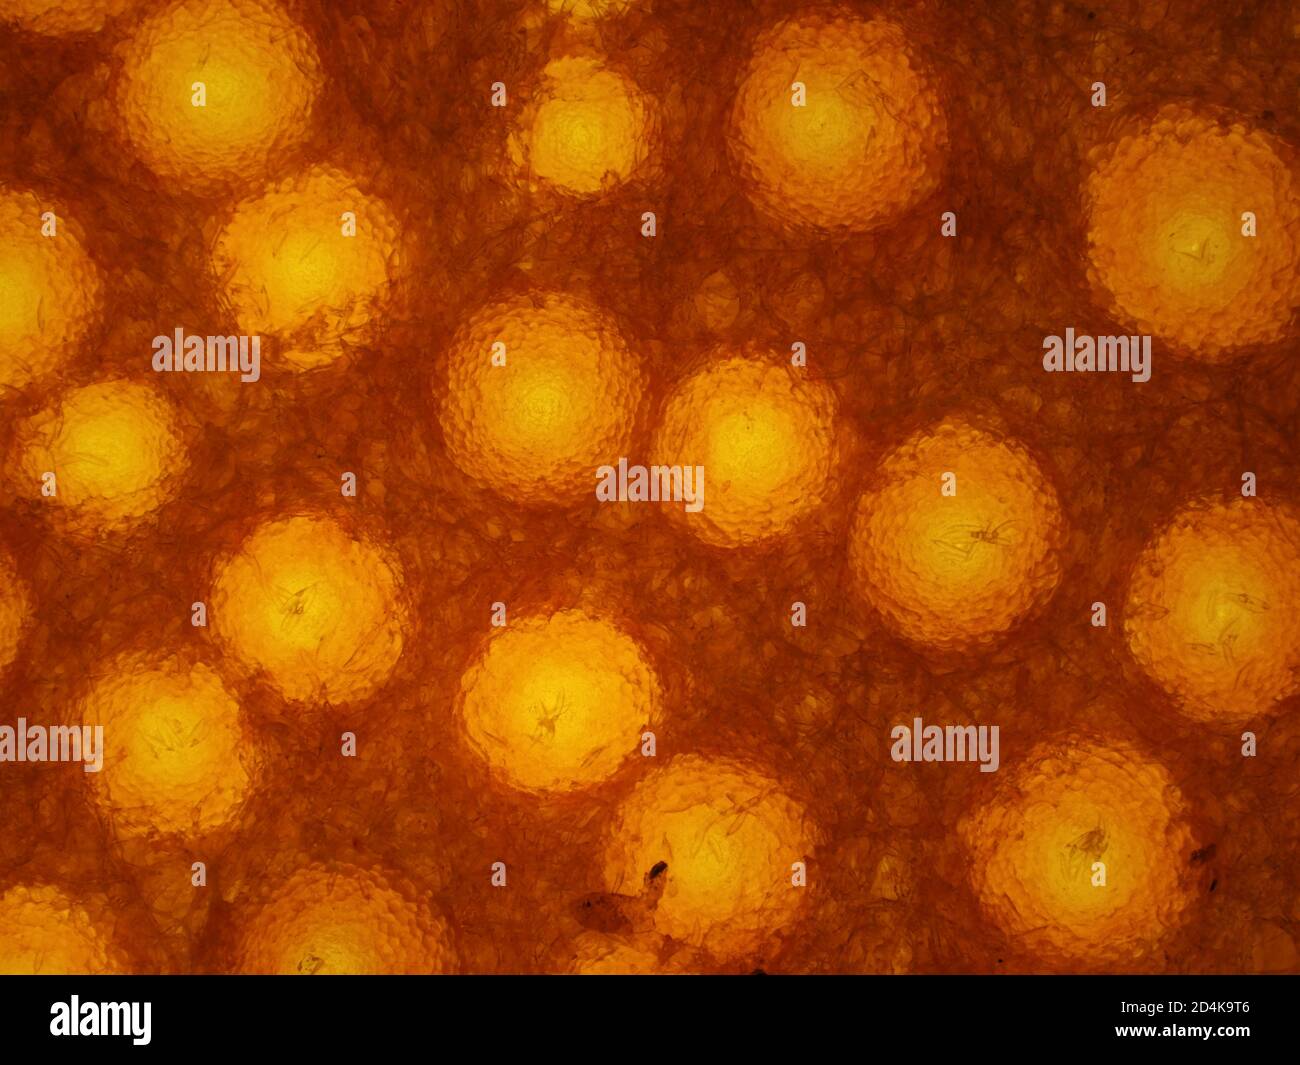 Champignon du homard (Hypomyces lactifluorum) sous microscope, micrographe à lumière transmise, champ de vision horizontal d'environ 1,2 mm Banque D'Images